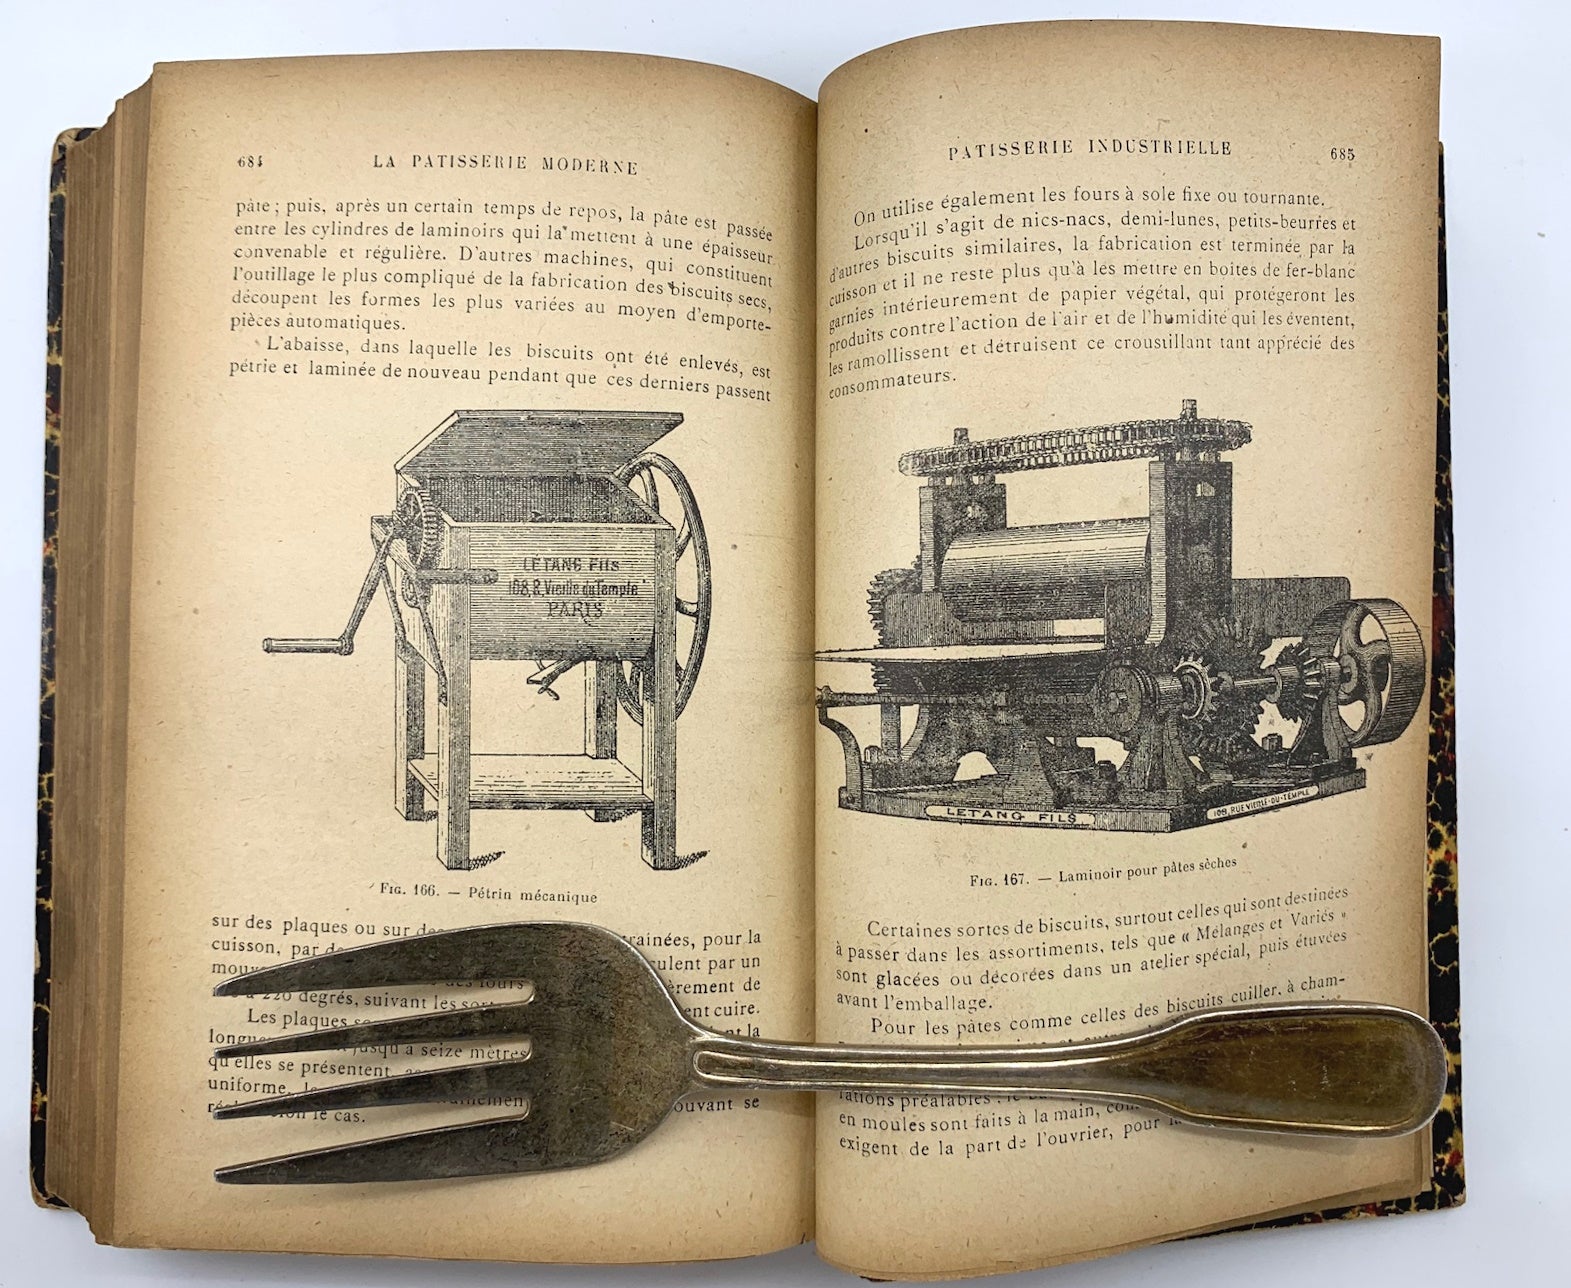 Livre Grand Livre De La Cuisine Francaise -Le